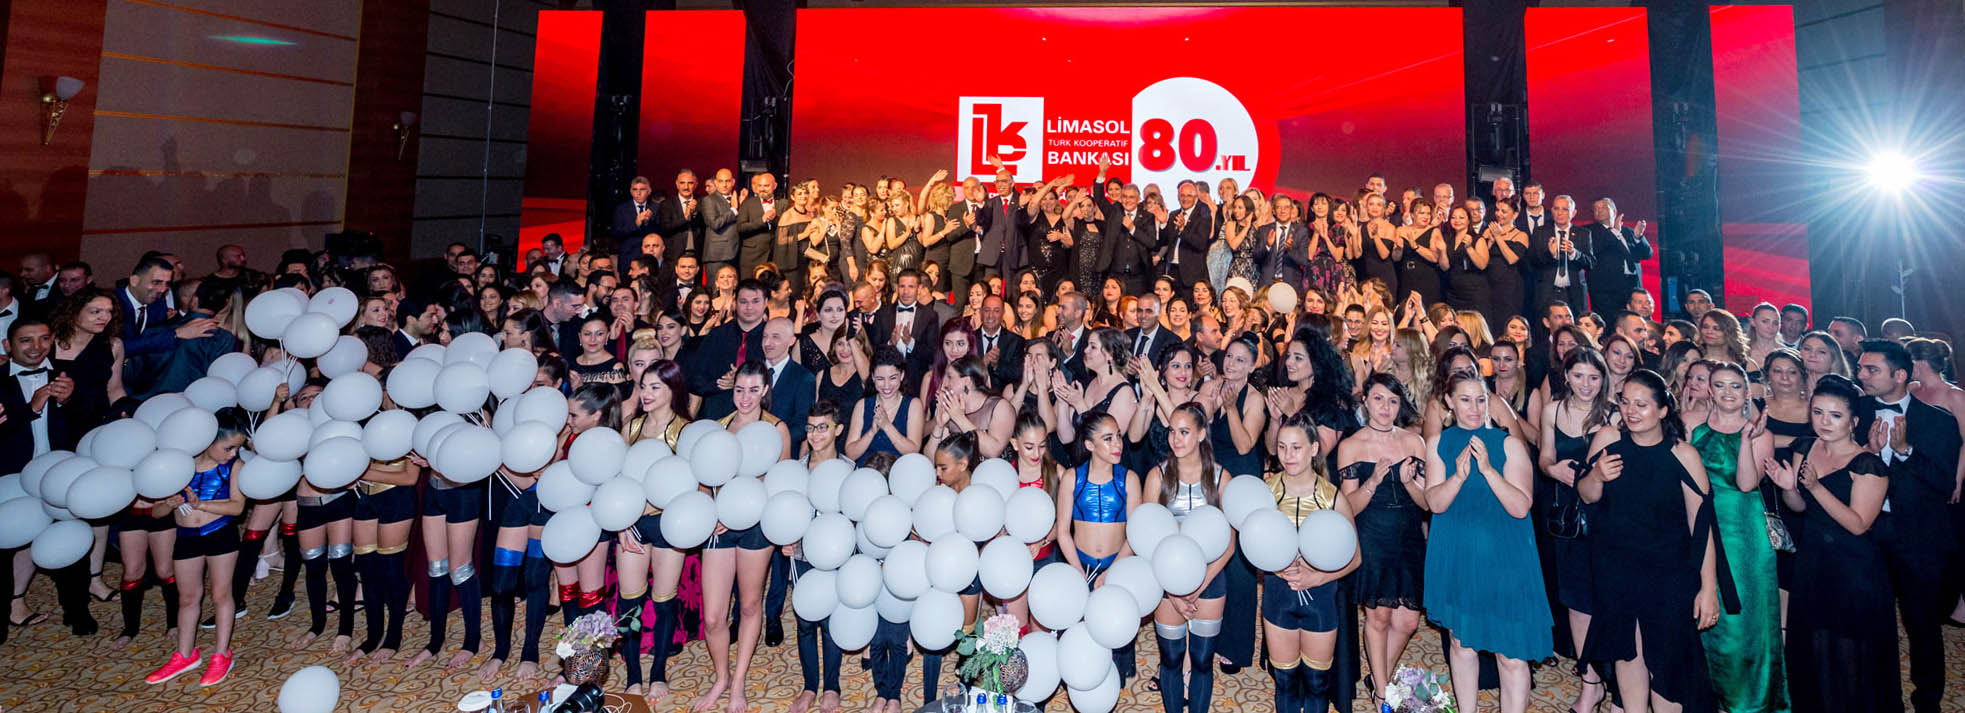 Limasol Bankası'nın "80. gurur yılı gala gecesi"